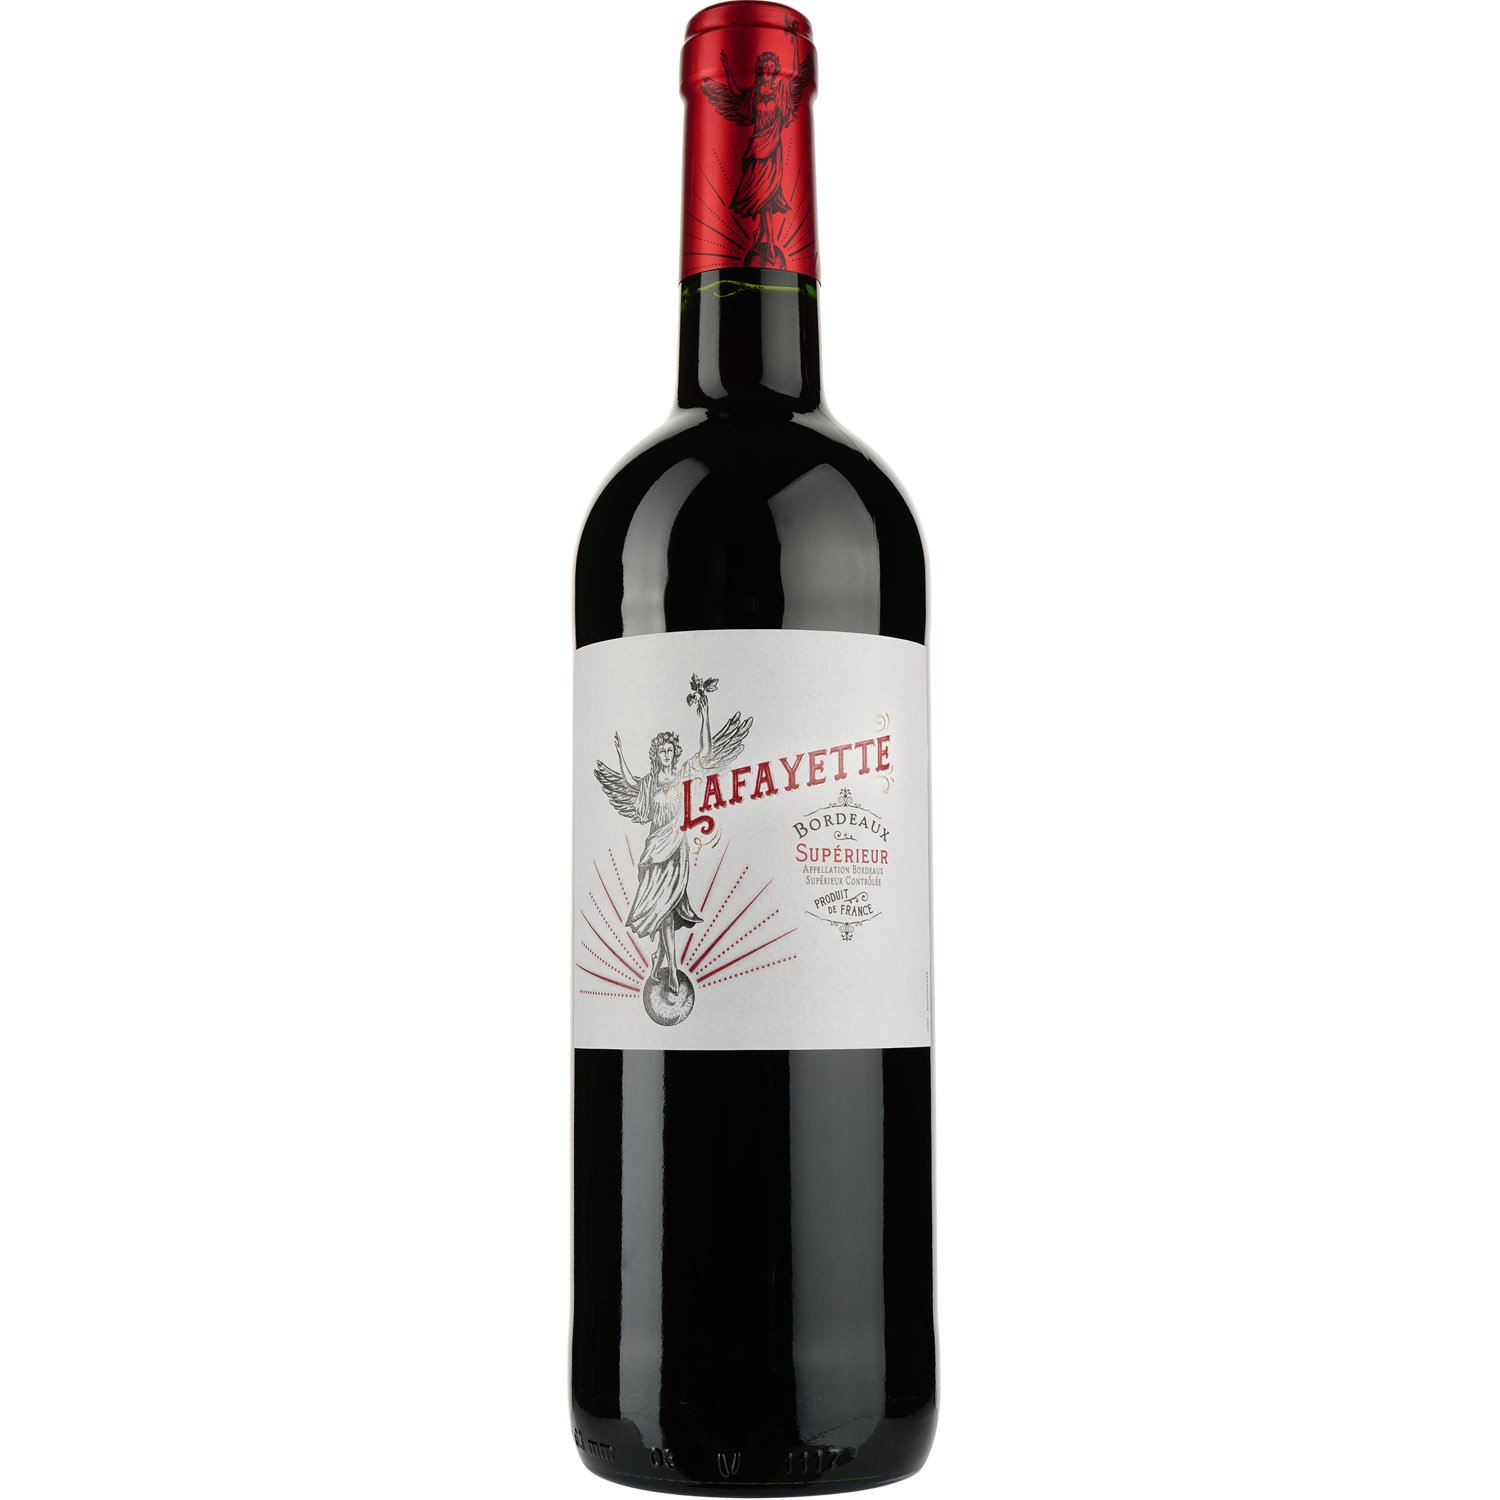 Вино Lafayette AOP Bordeaux Superieur 2016, красное, сухое, 0,75 л - фото 1